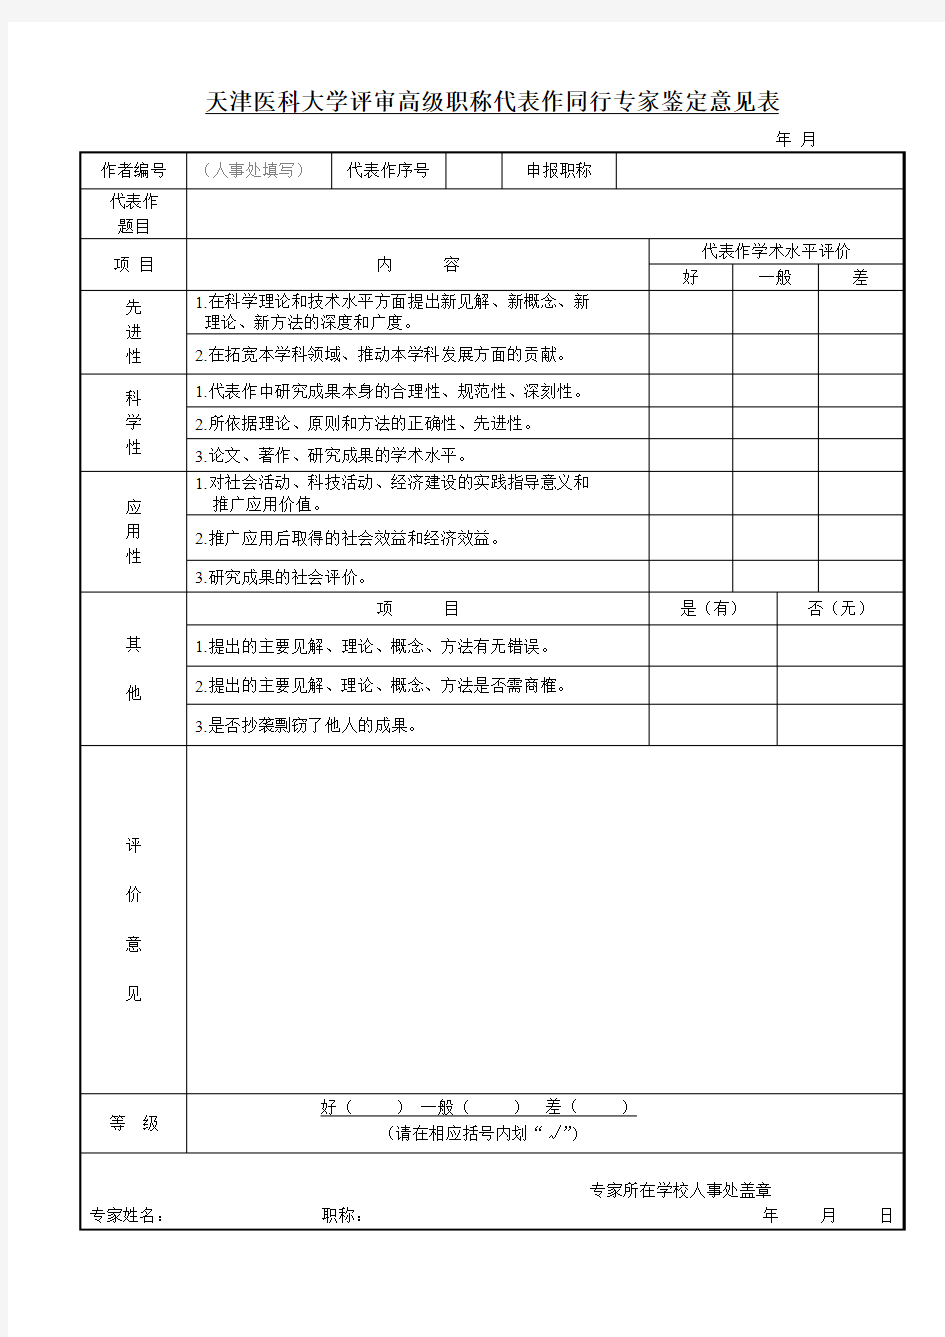 天津理工大学评审高级职称代表作同行专家鉴定意见表